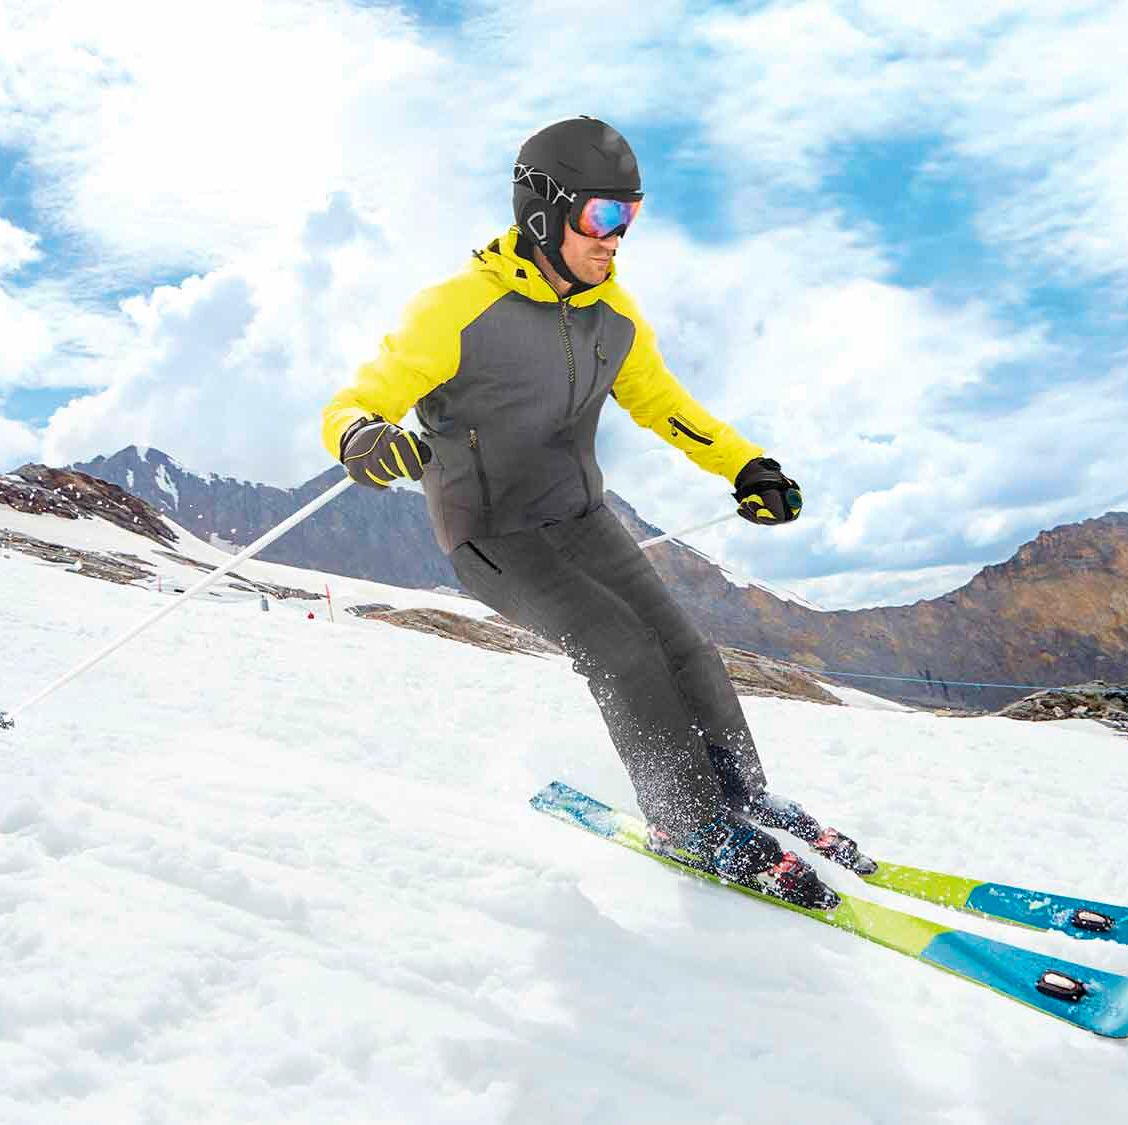 Lidl saca una chaqueta de esquí barata menos de 30 euros